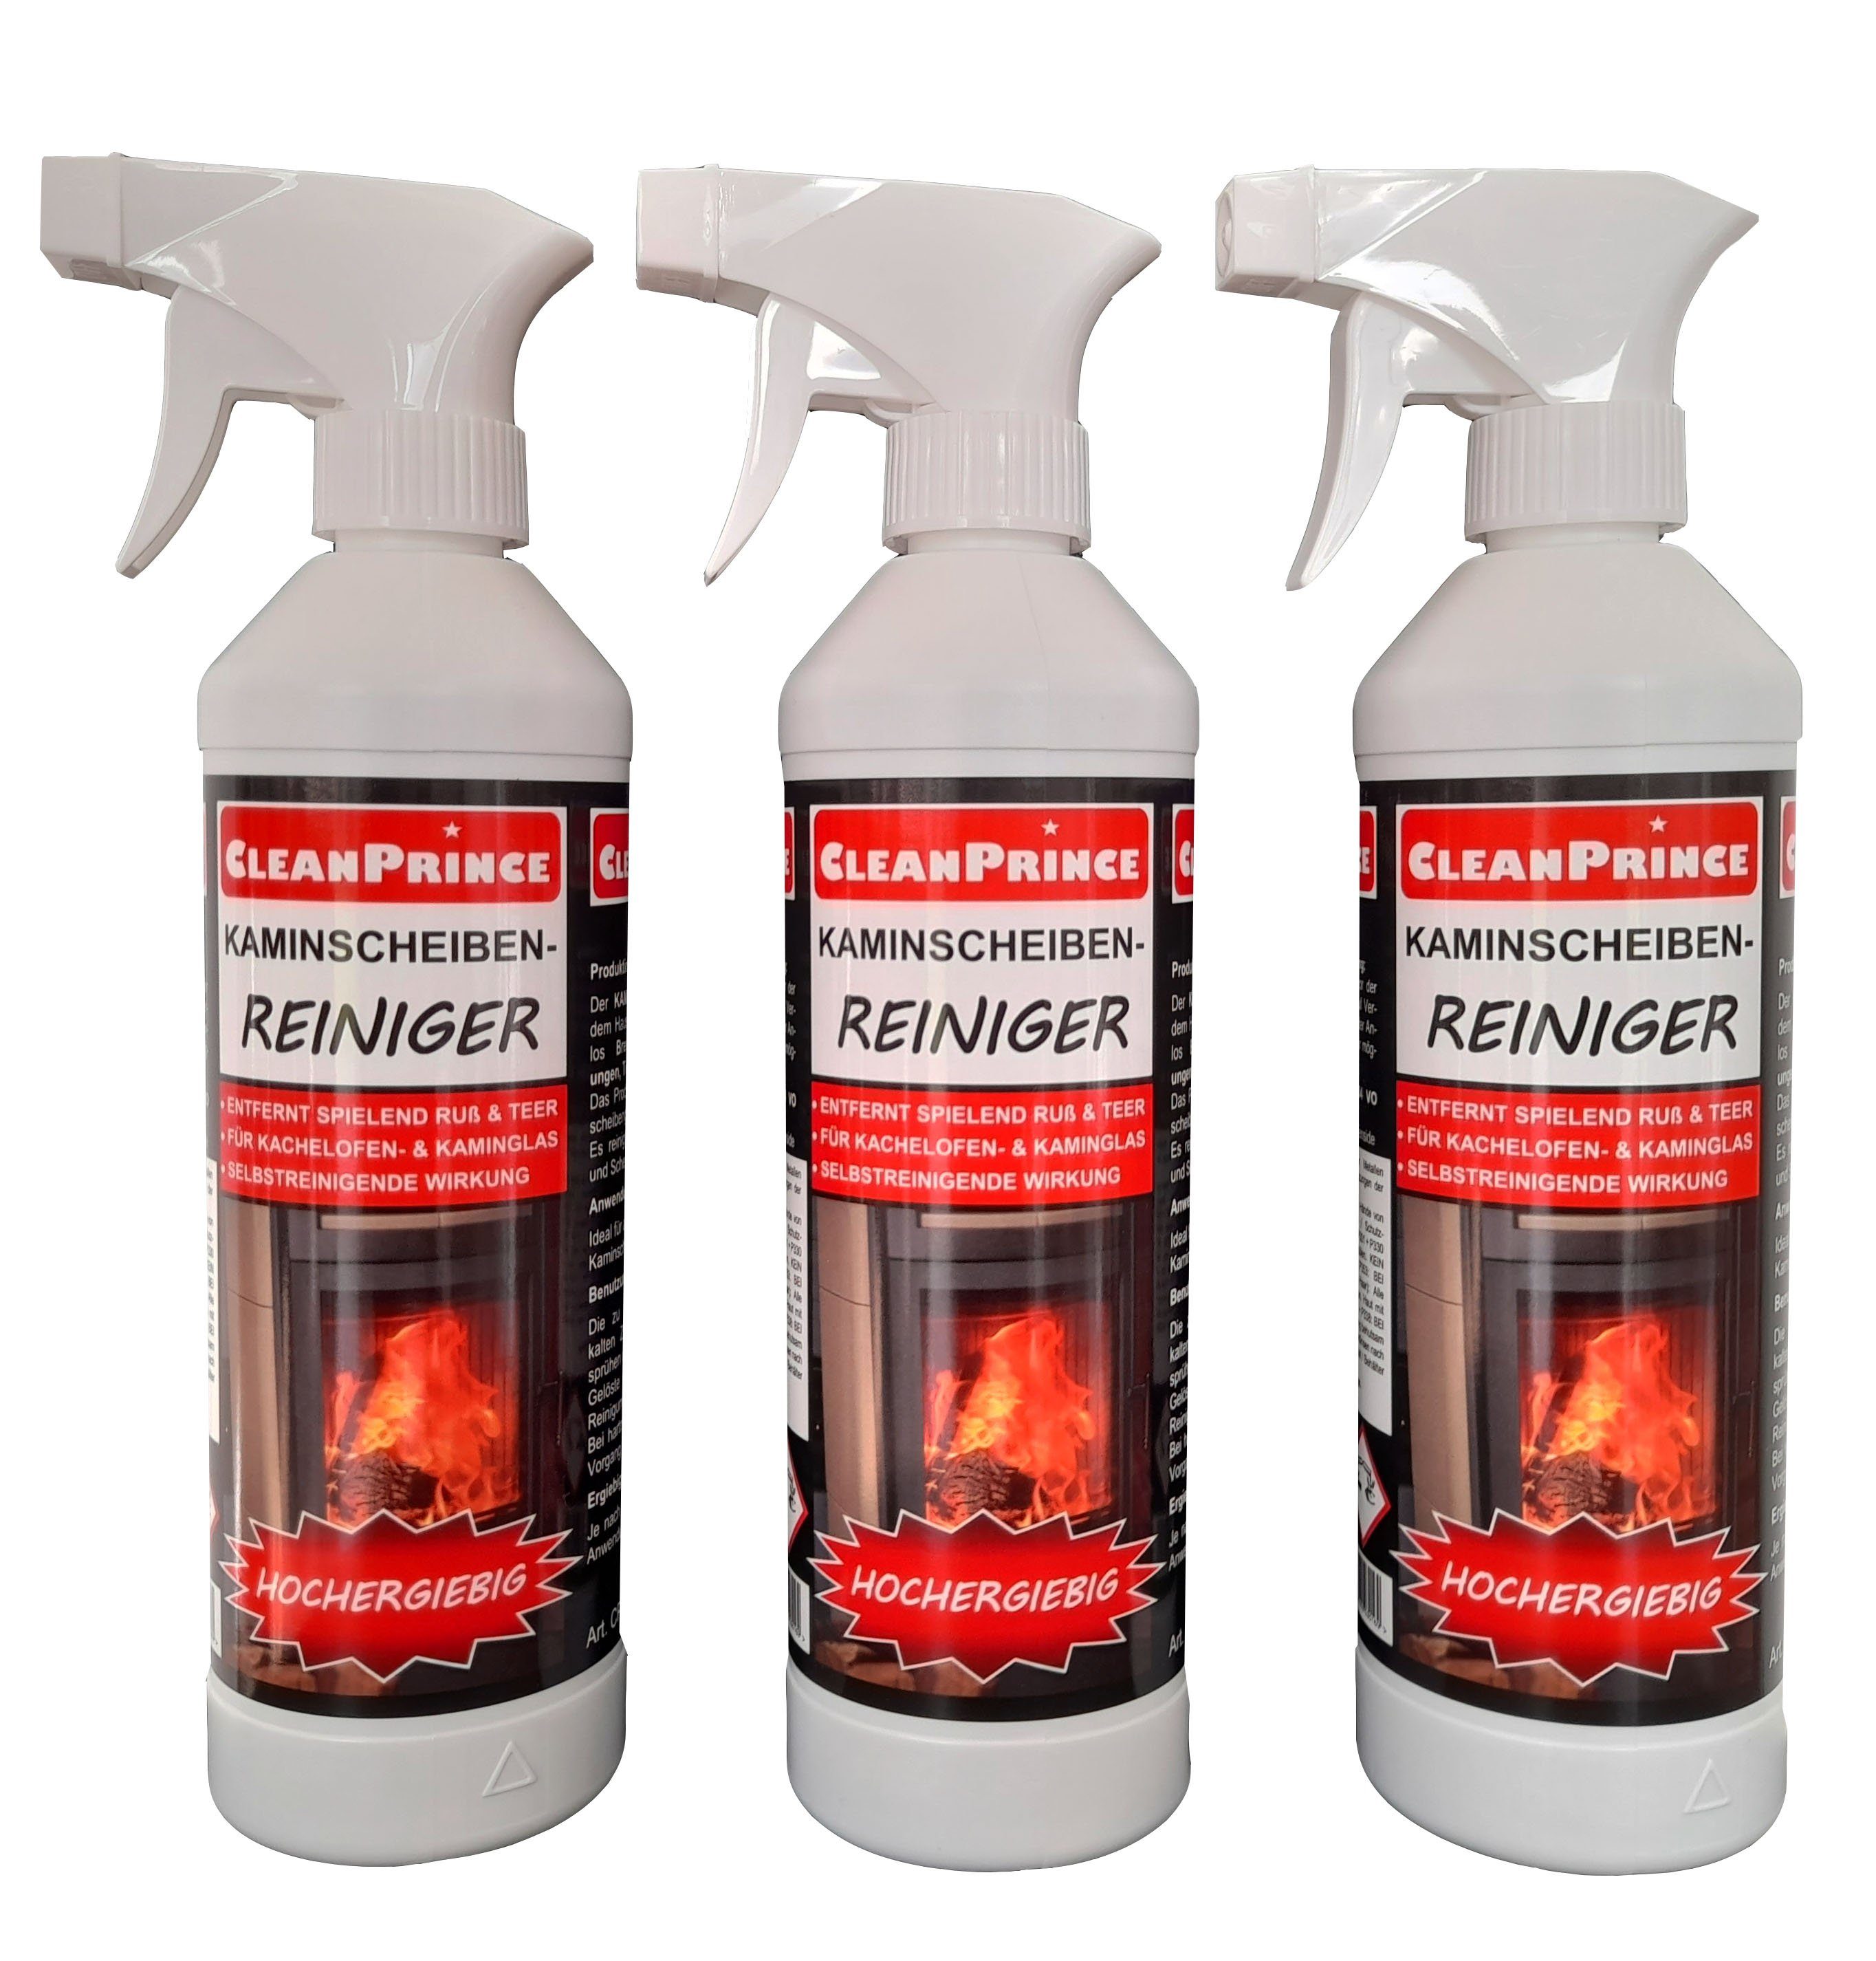 CleanPrince Kaminscheibenreiniger 3 Stück à 500 ml Reinigungsspray (reinigt selbsttätig ohne Schrubben und Scheuern)